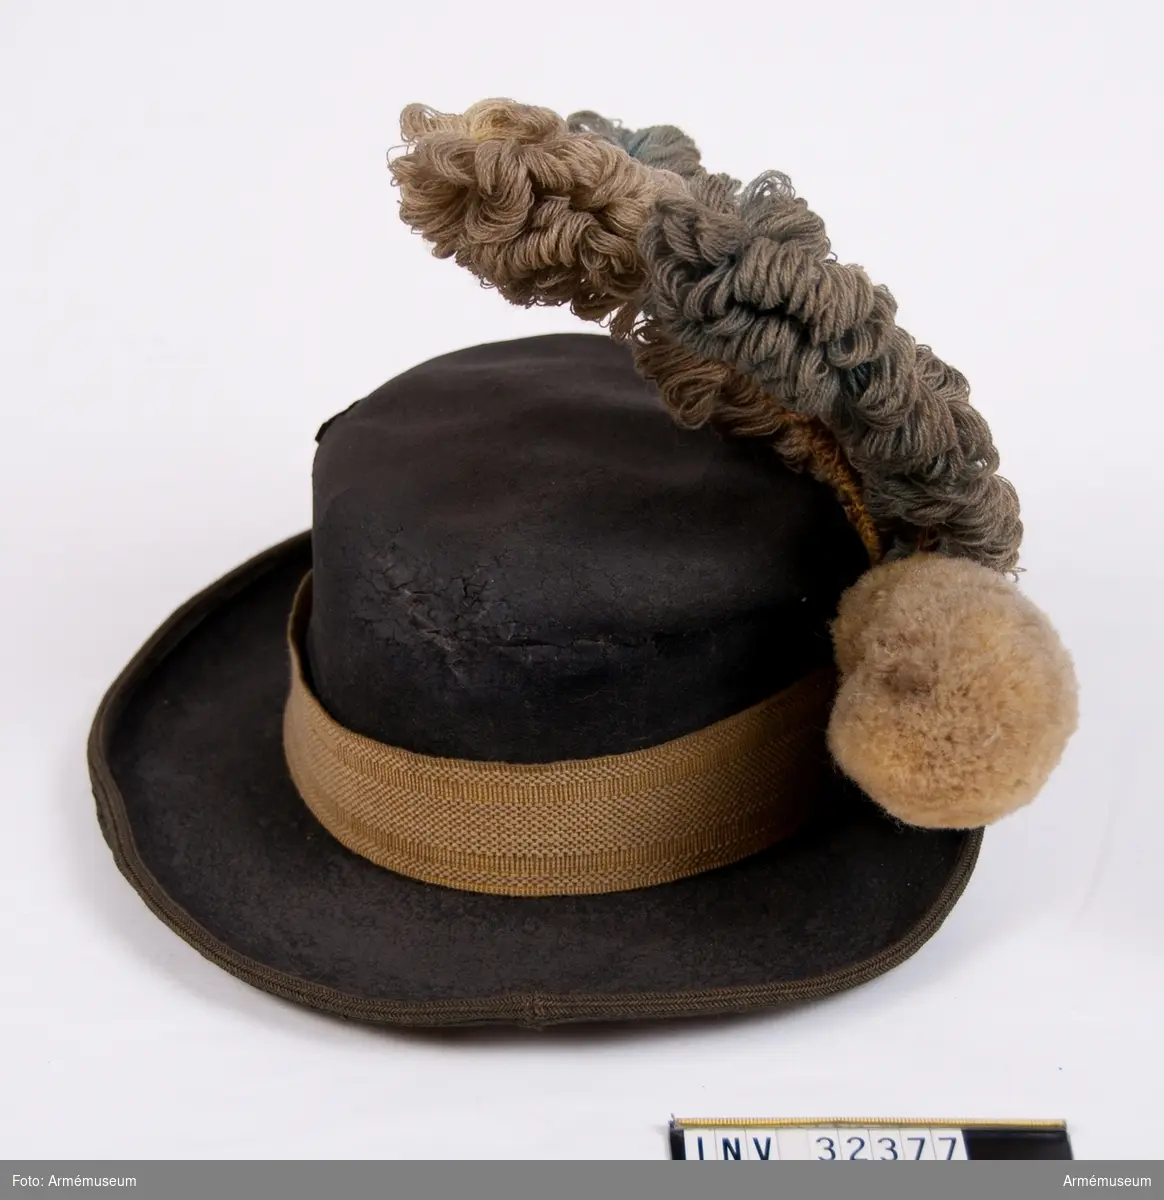 Grupp C I.
Hatt av svart filt med vävt hattband.